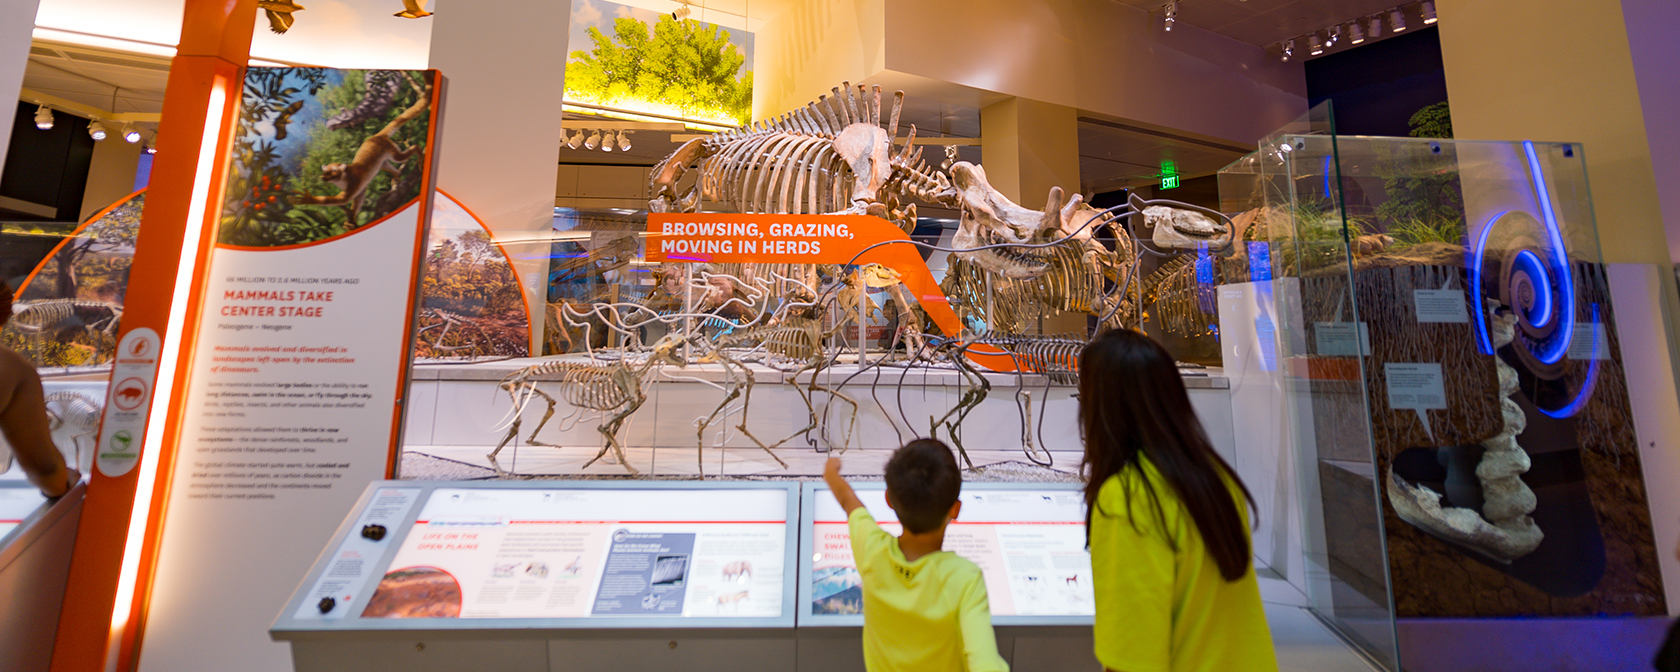 スミソニアン自然史博物館での「ディープタイム」化石展示